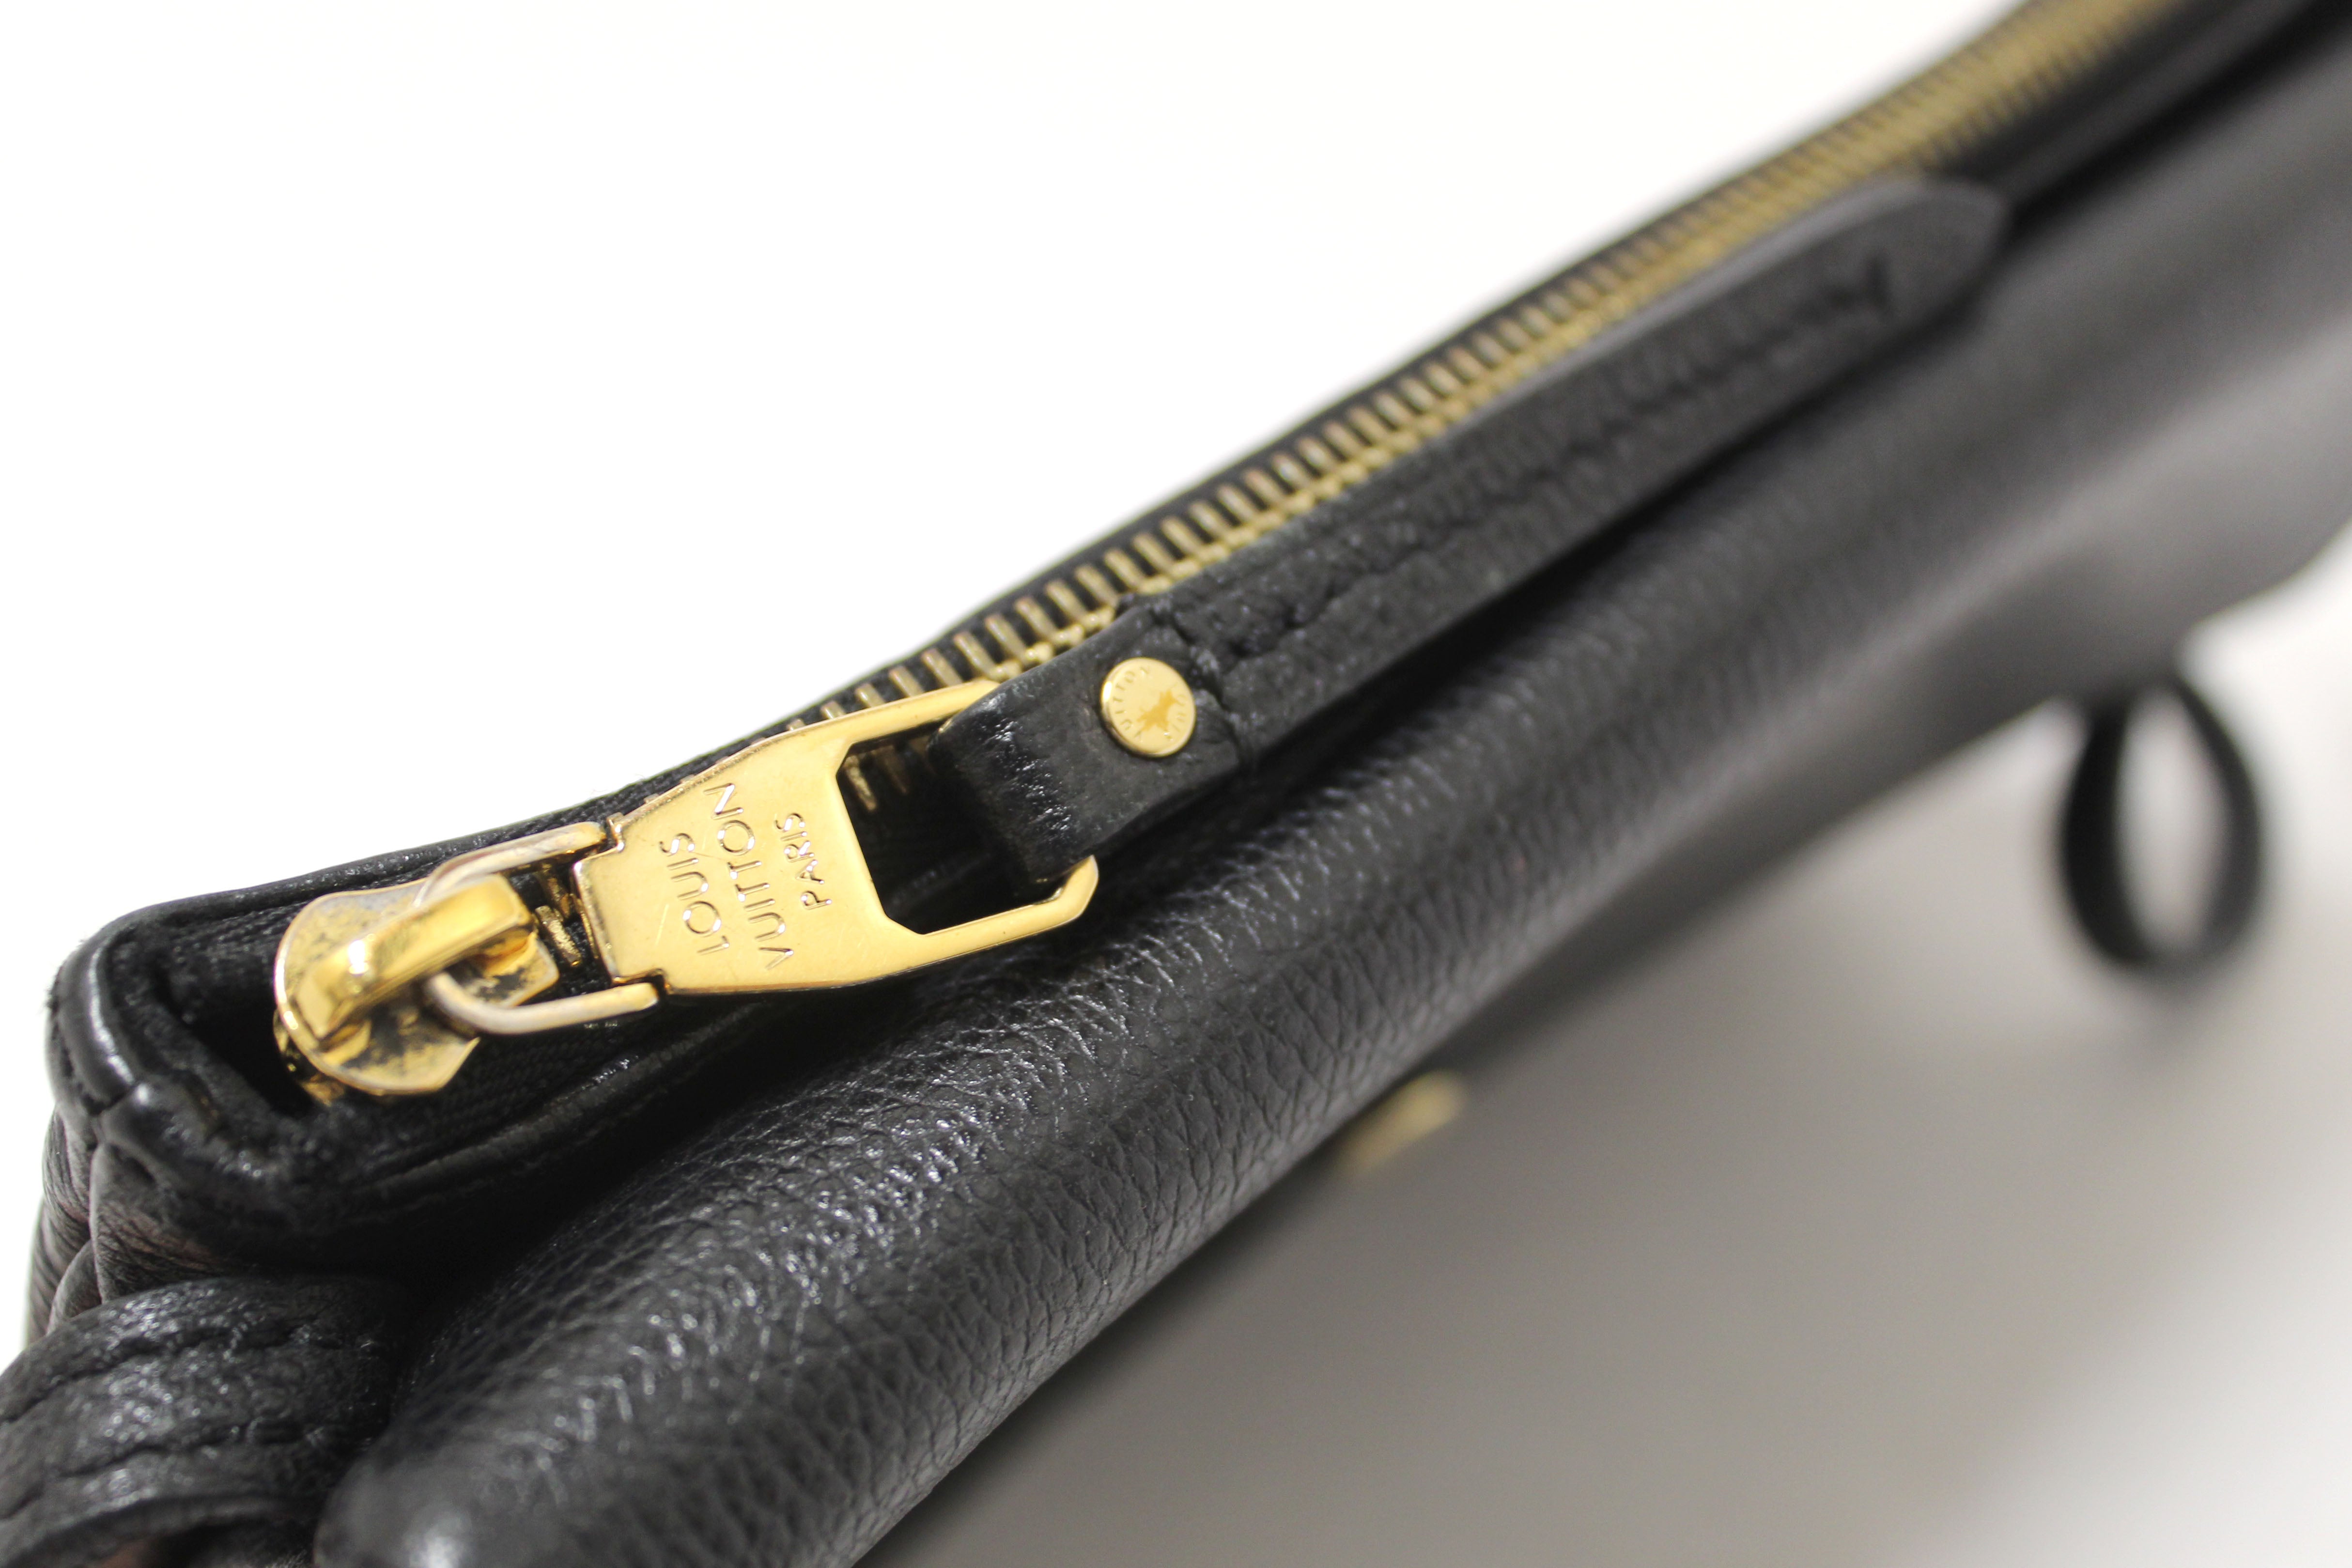 Authentic Louis Vuitton Black Monogram Empreinte Leather Twice Pochette Messenger Bag